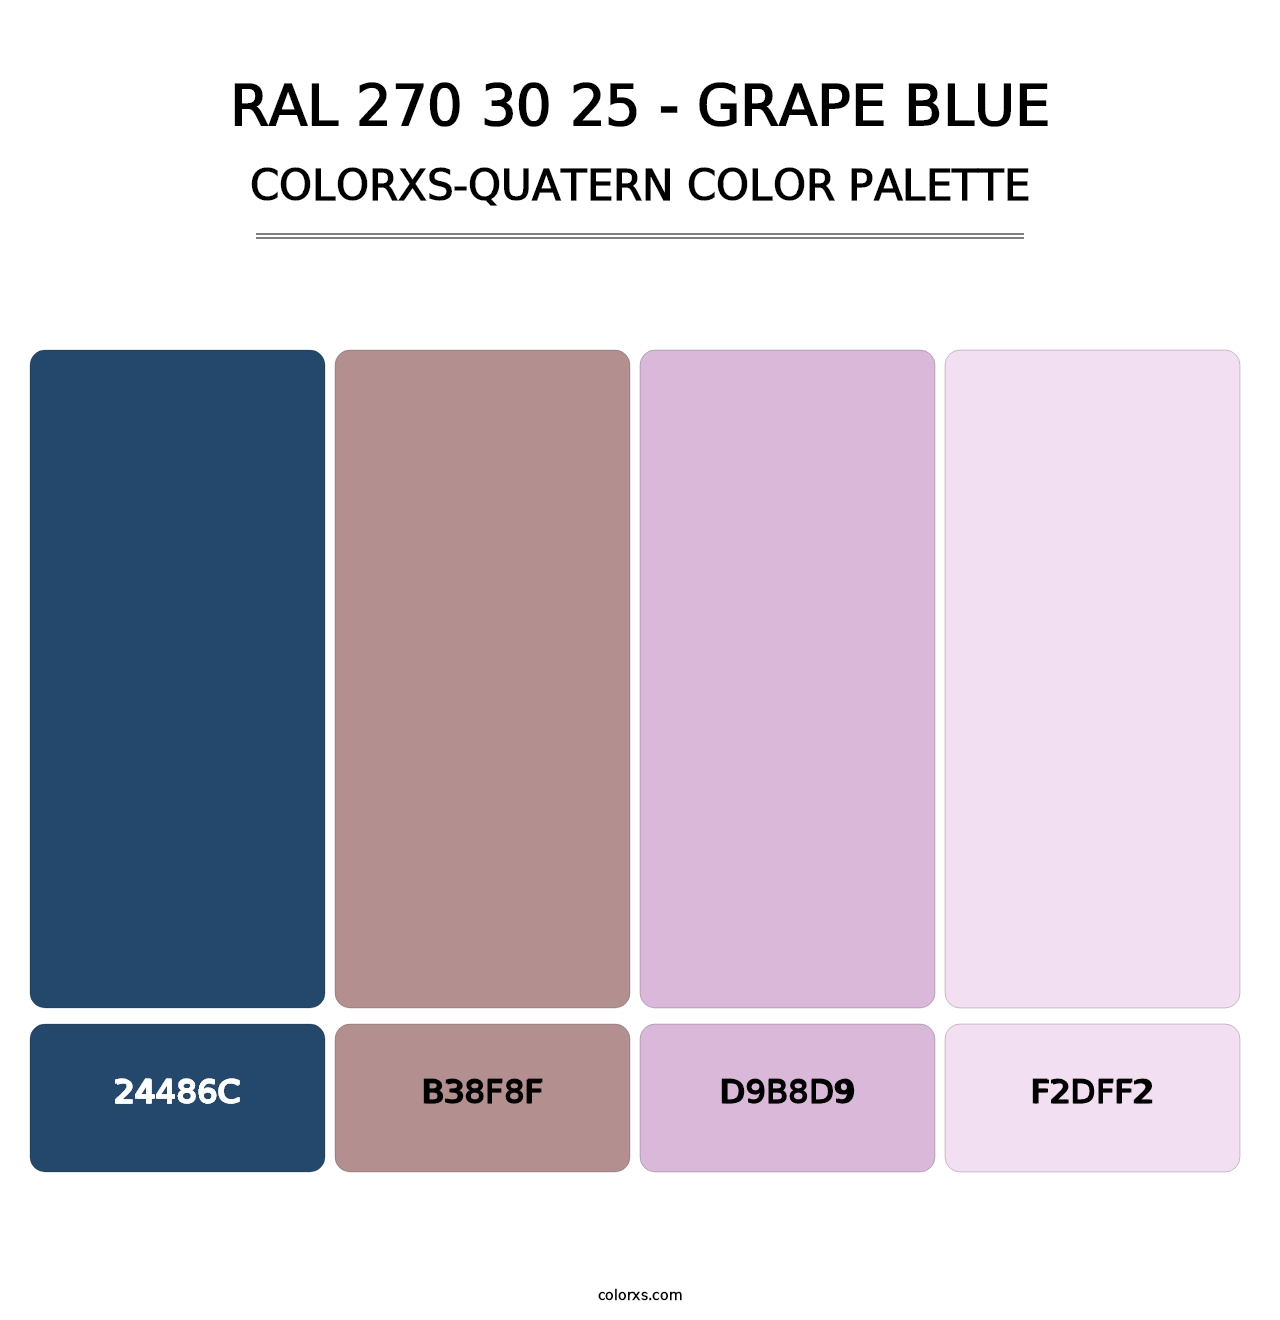 RAL 270 30 25 - Grape Blue - Colorxs Quatern Palette